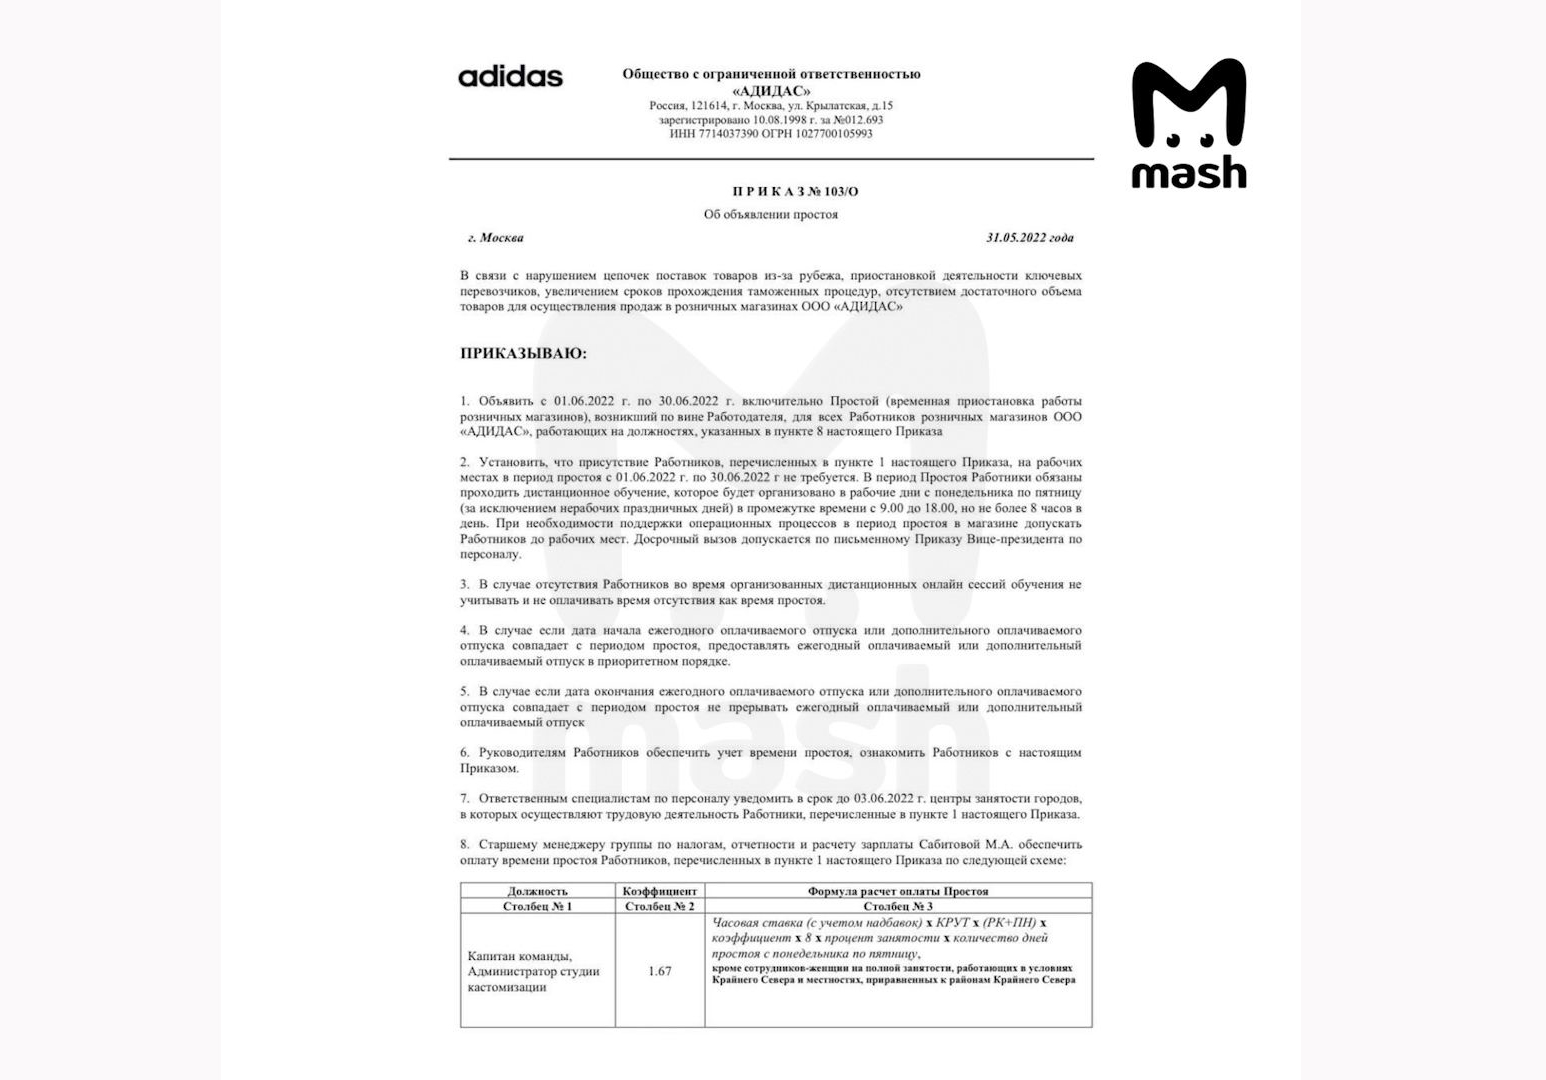 Документ Adidas об объявлении простоя. Фото © Mash